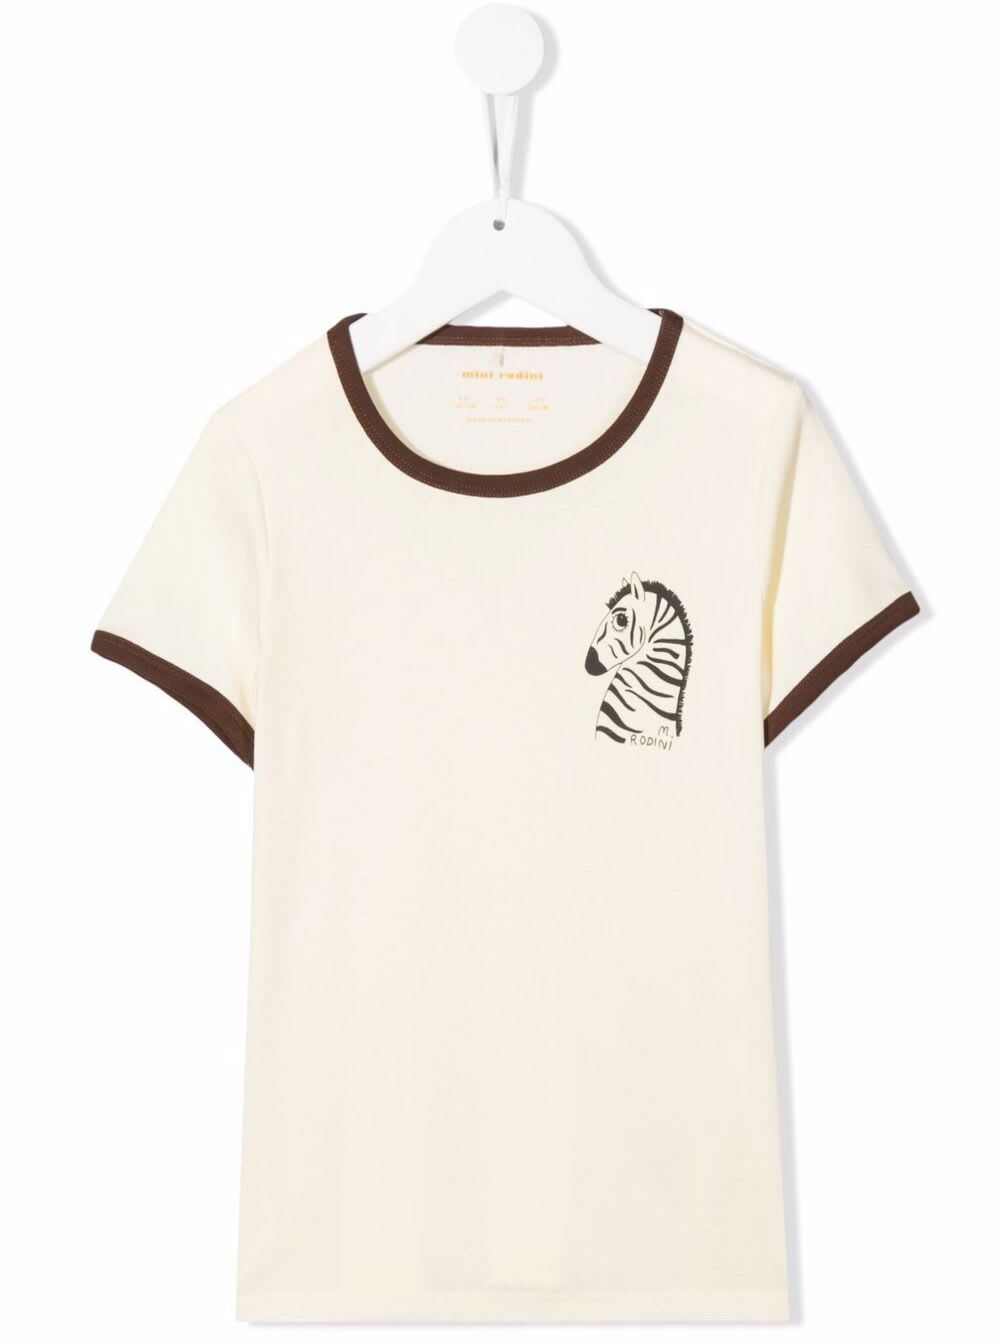 Mini Rodini Boy White Cotton T-shirt With Zebra Print